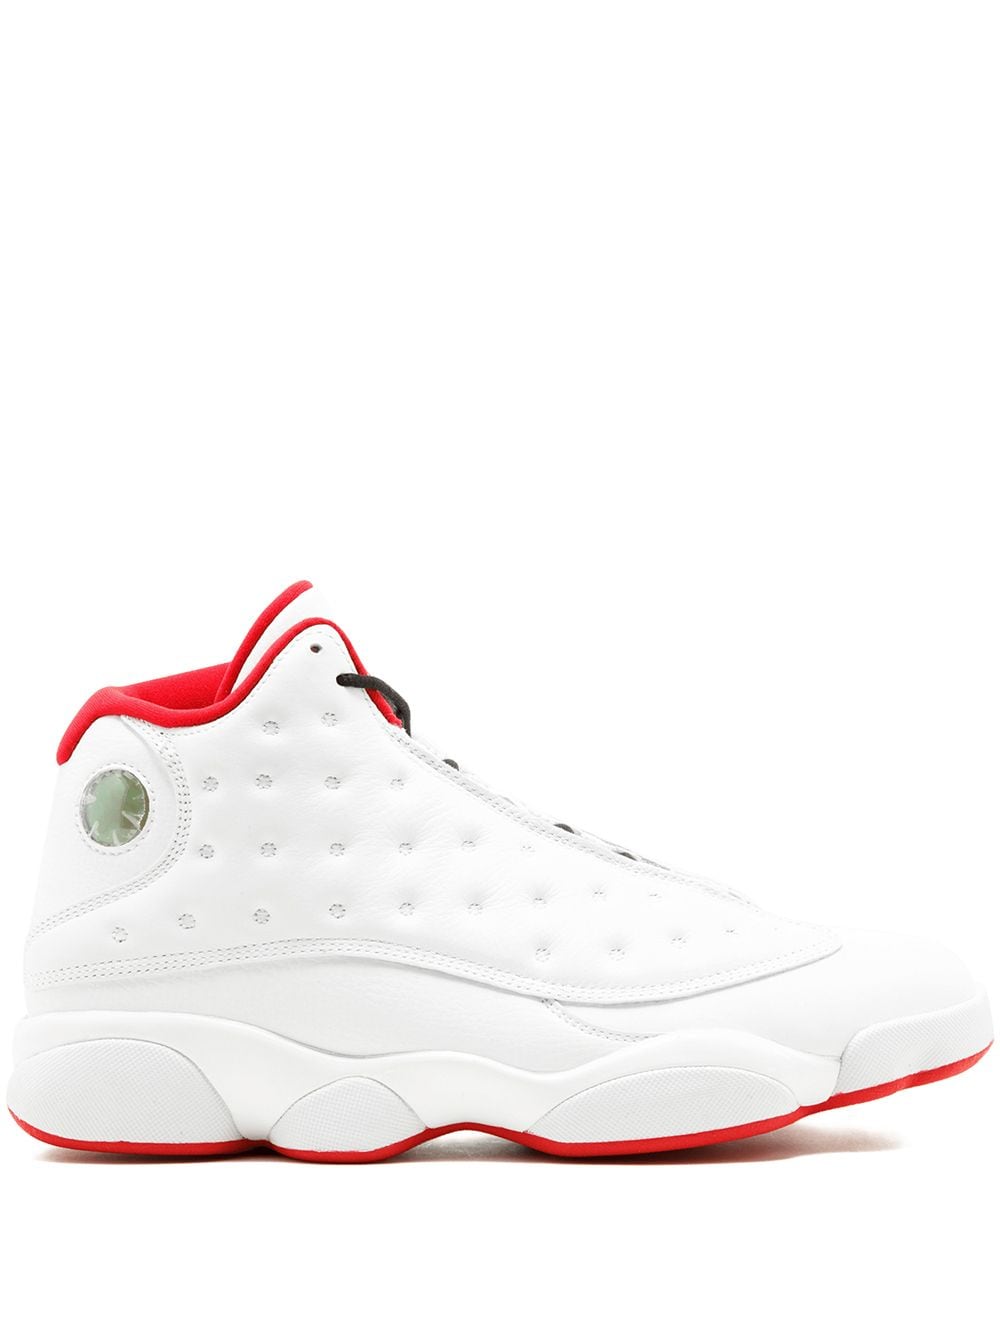 Jordan Air Jordan 13 Retro sneakers - White